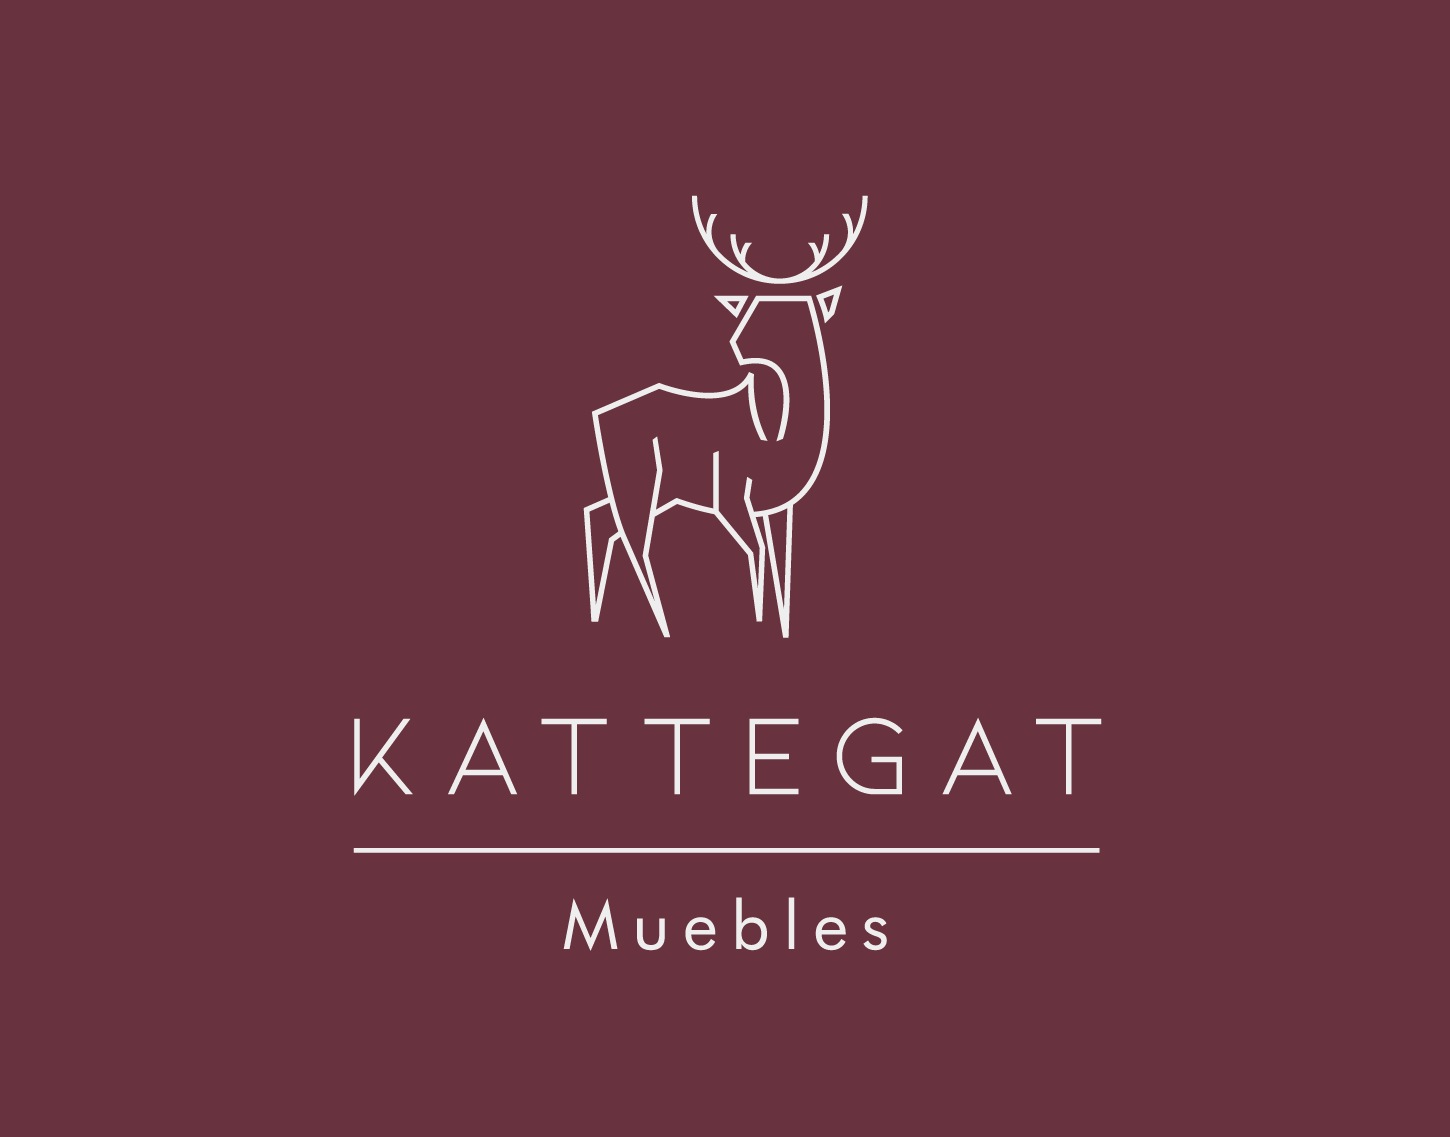 Logo de marca Kattegat Muebles. El logo tiene un siervo color blanco con fondo color vino.